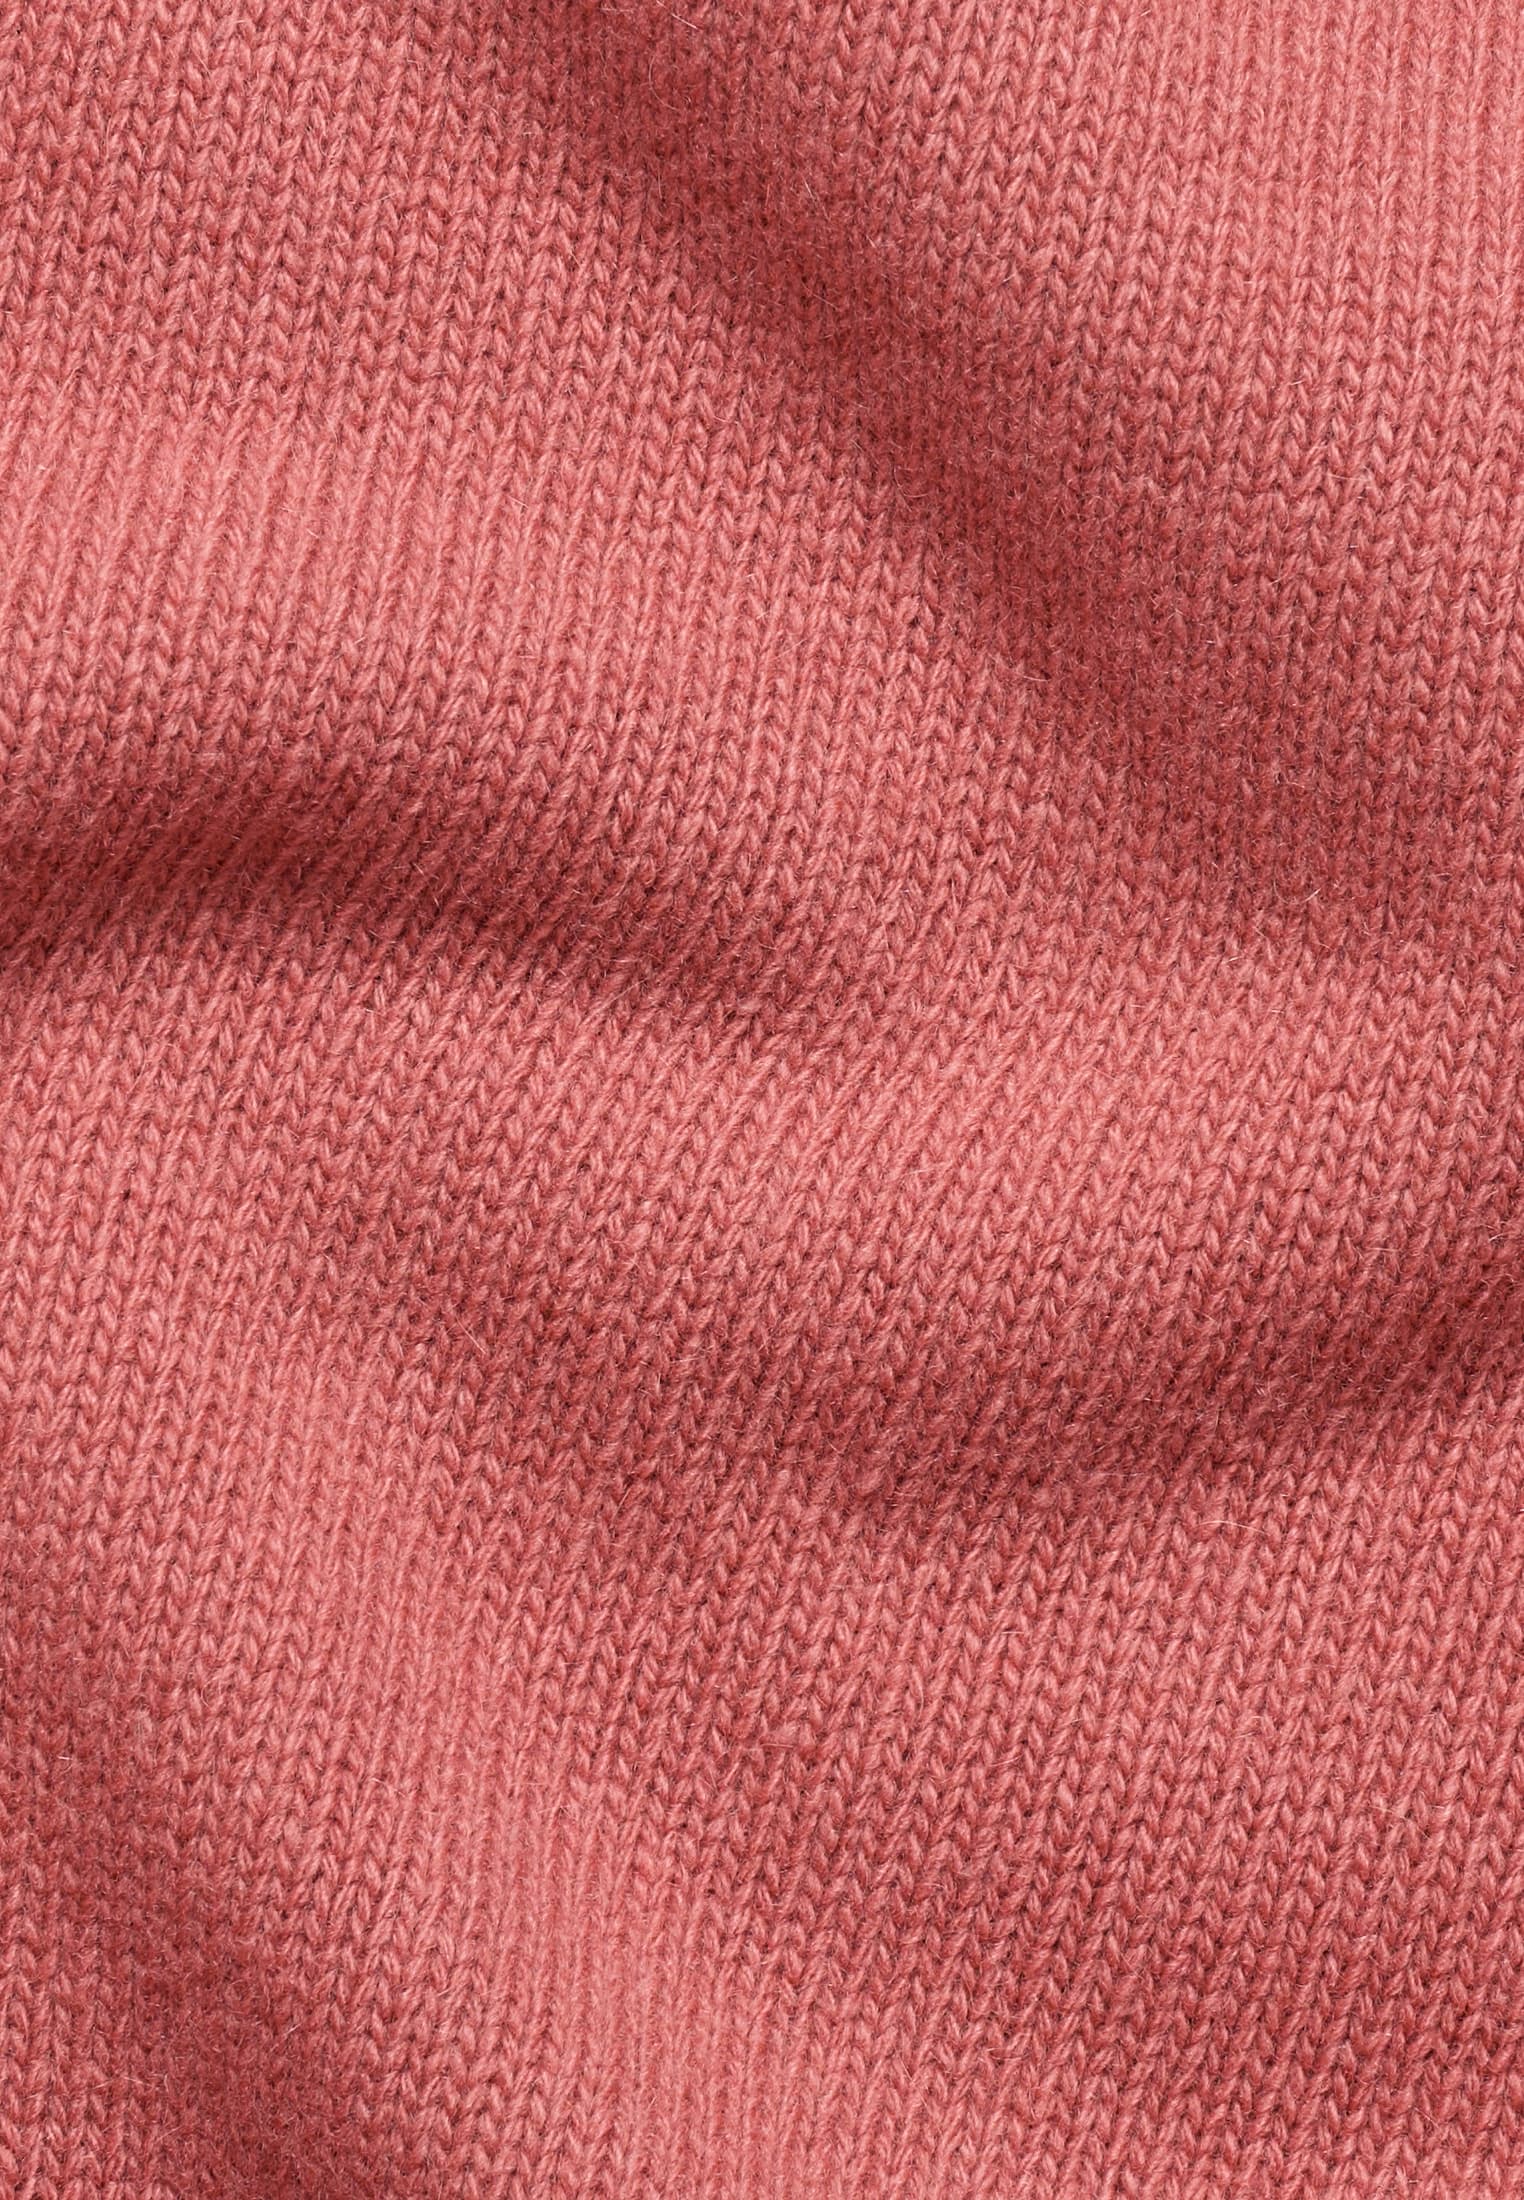 Strick Pullover in rot unifarben